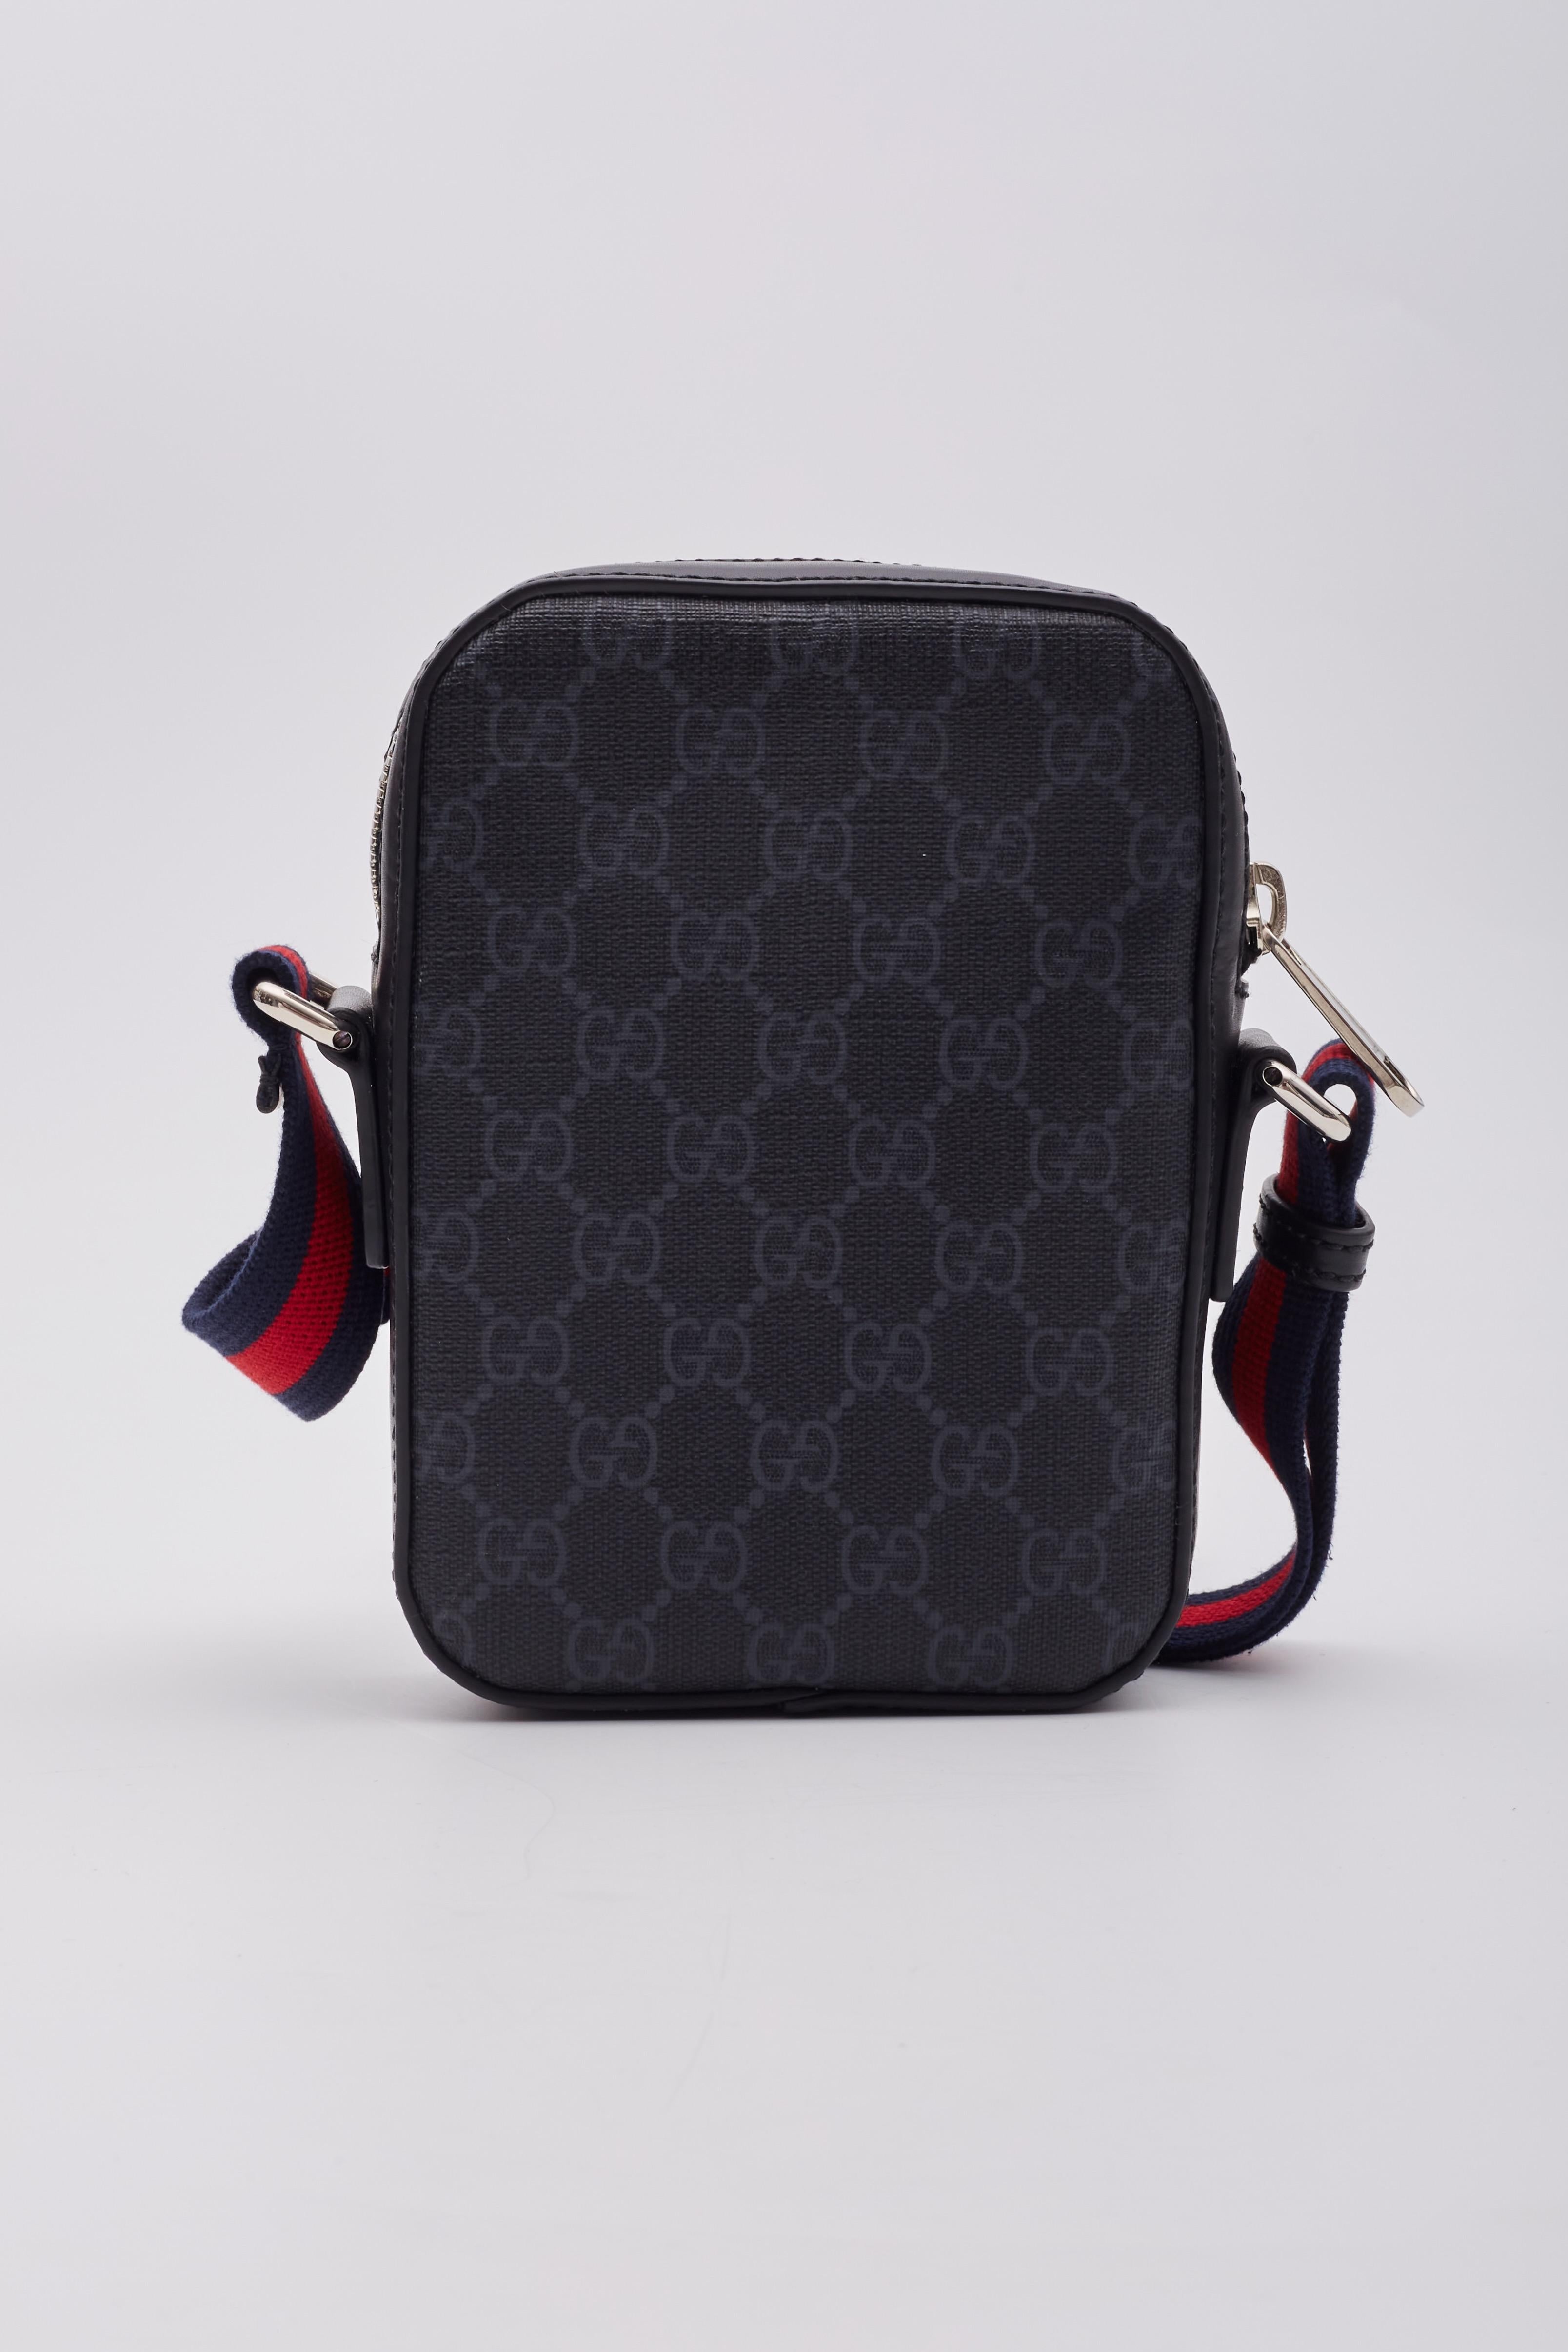 Gucci GG Supreme Monogramm Web Messenger Bag Schwarz für Damen oder Herren im Angebot